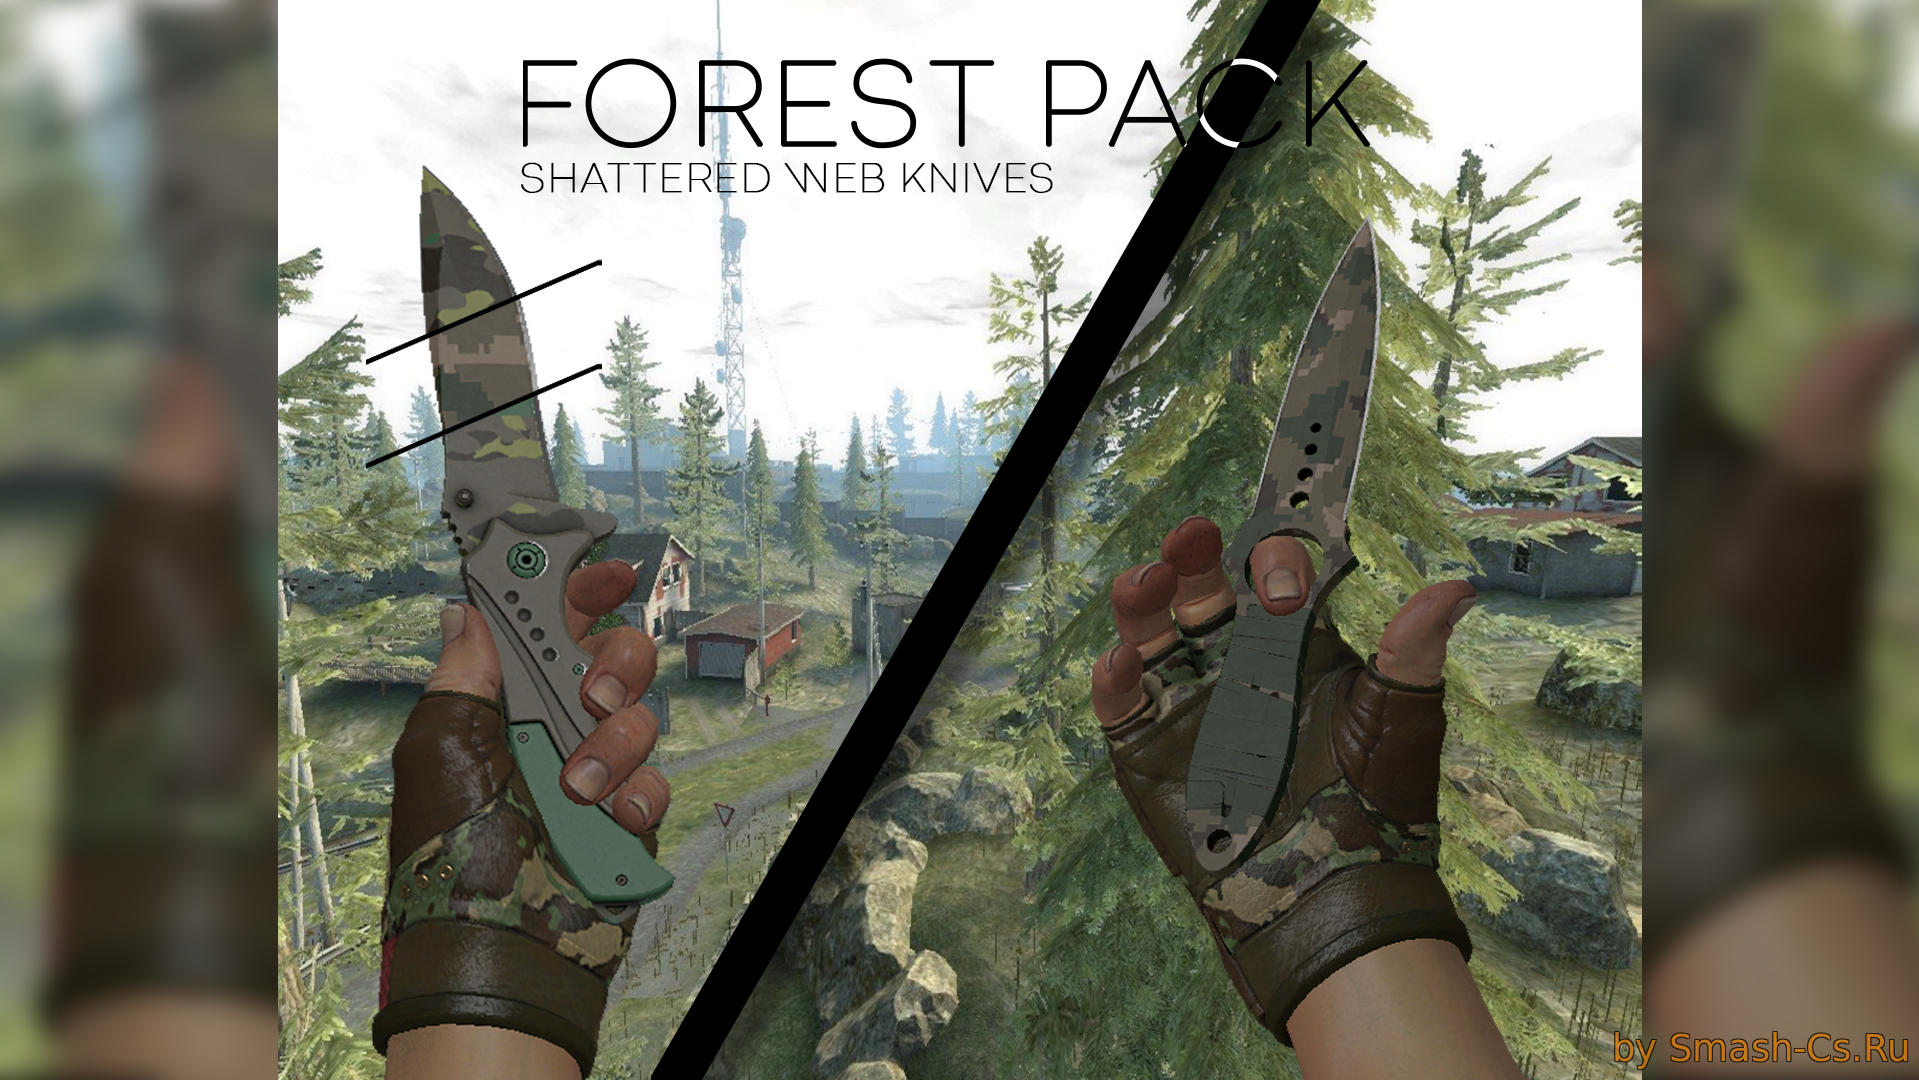 New Knives Forest Pack for CS:S v91